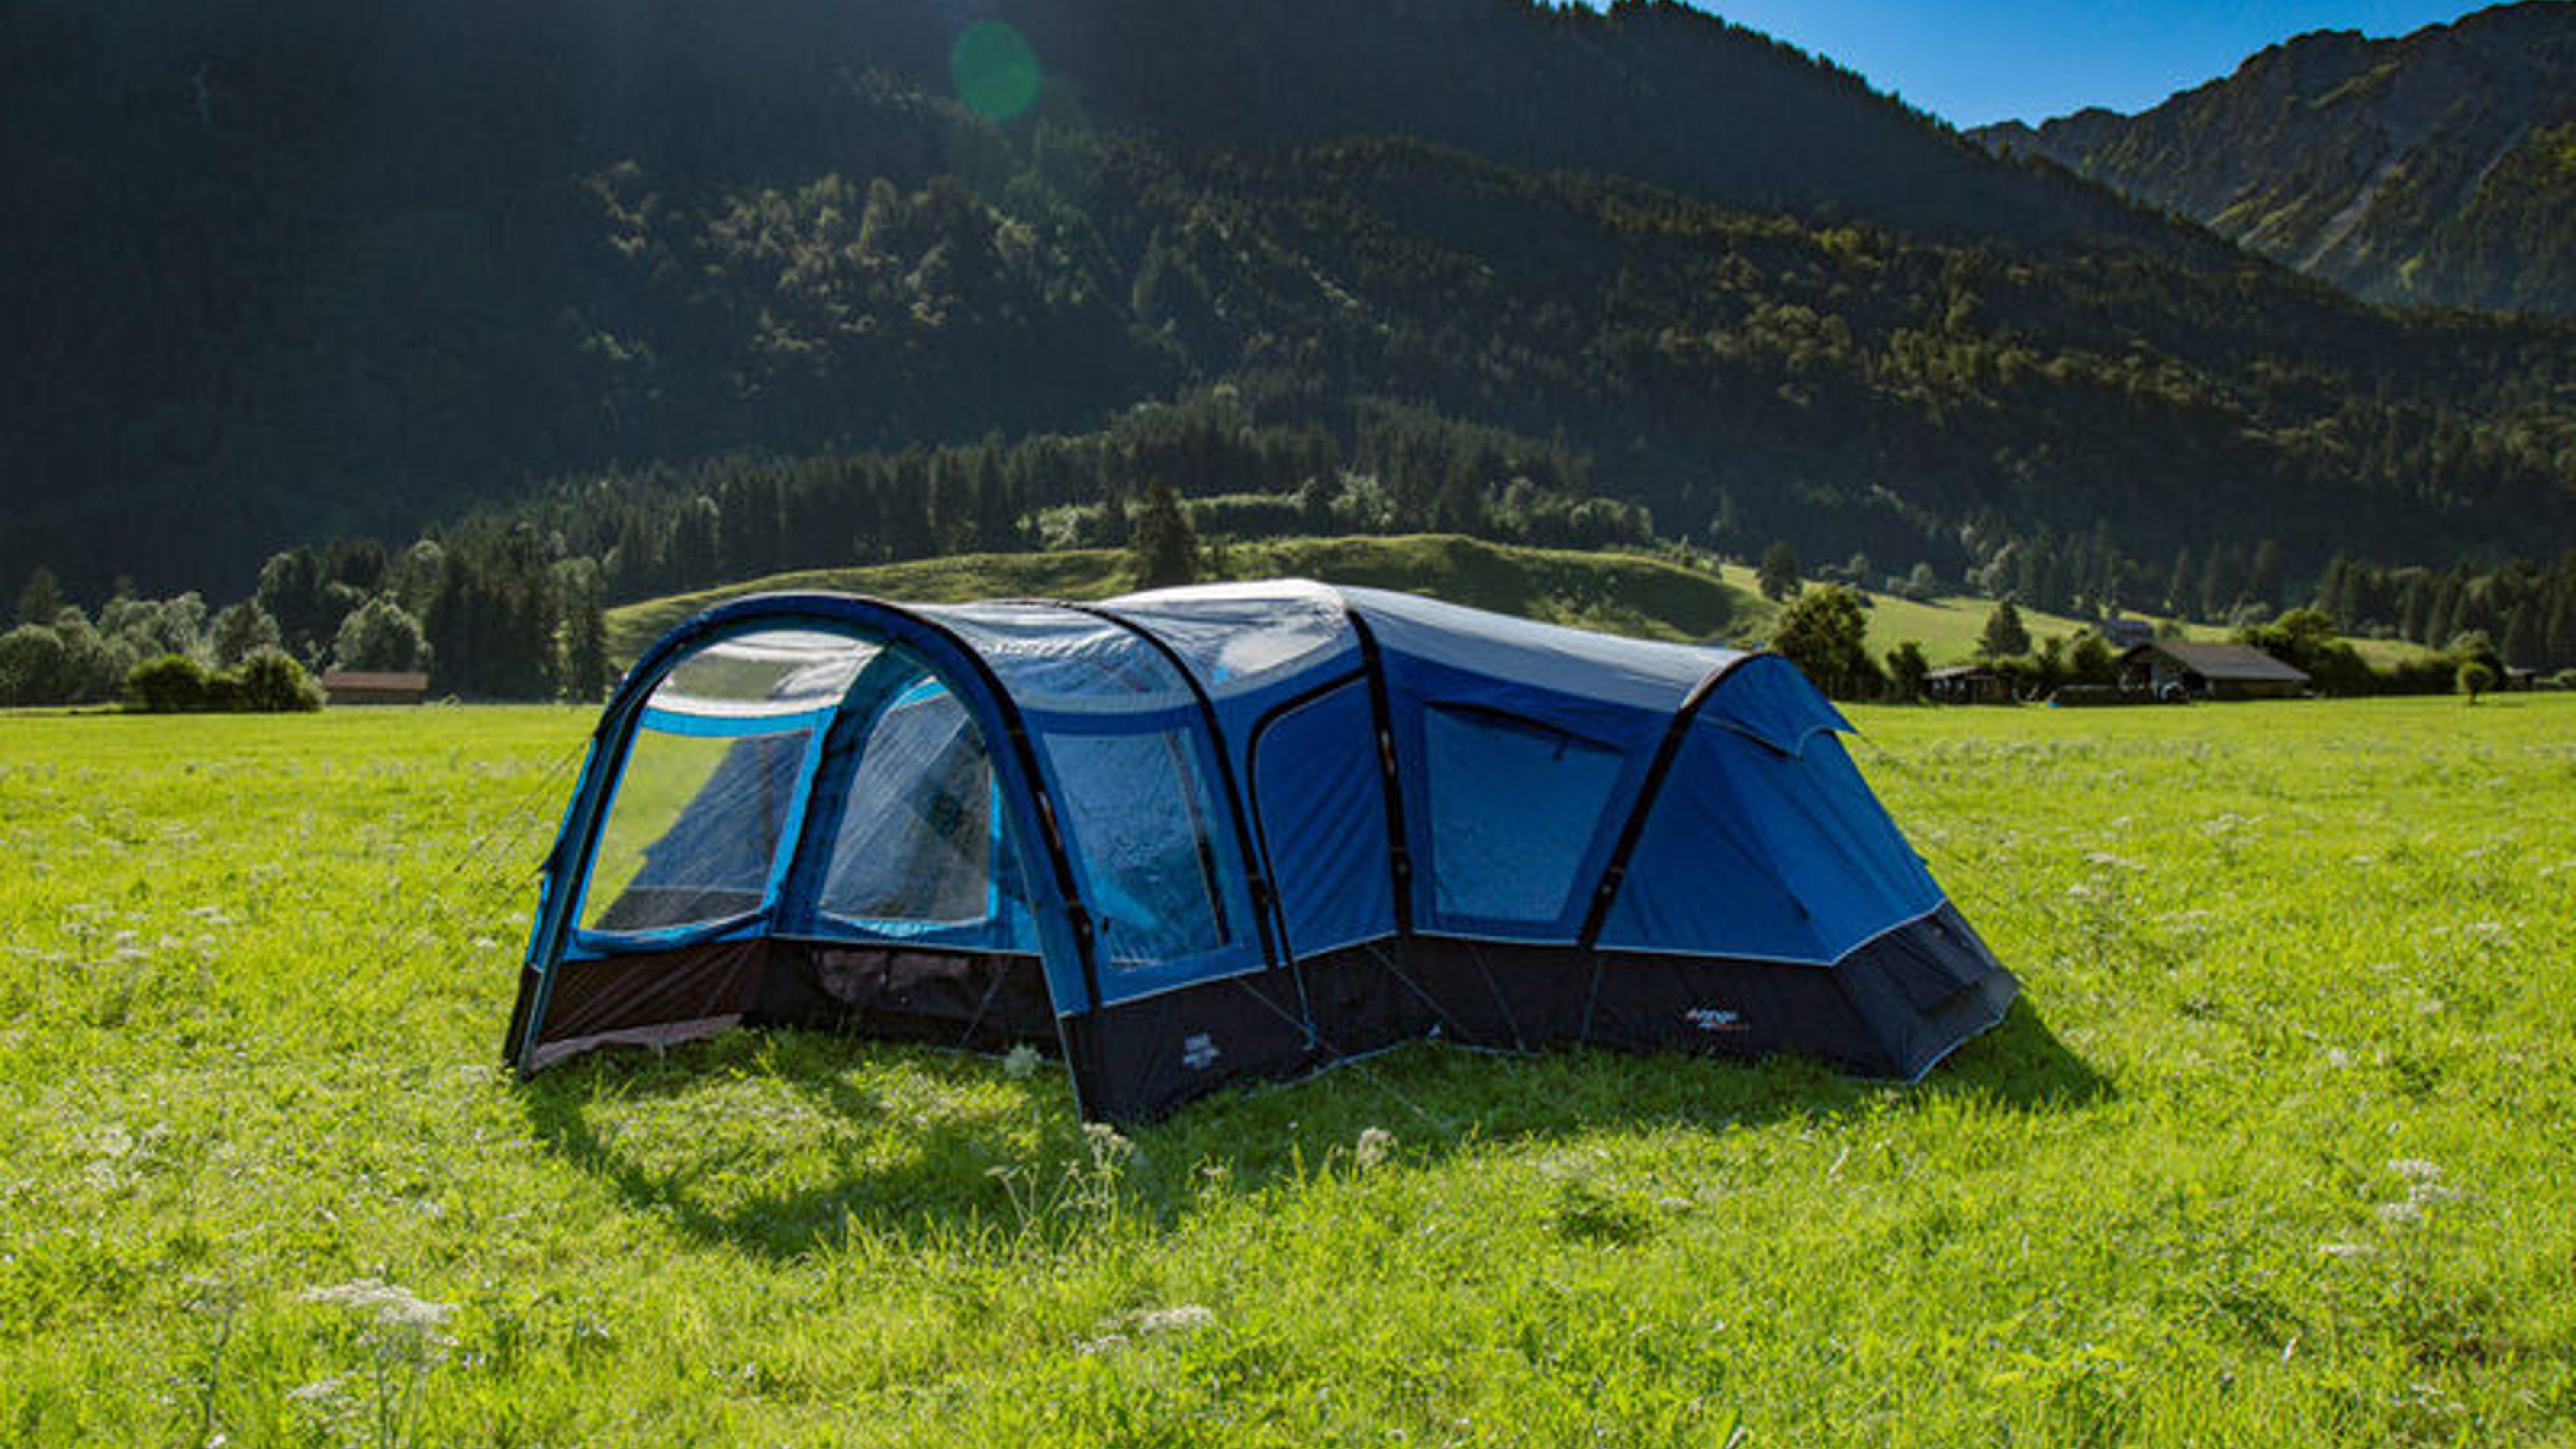 The Vango Diablo AirBeam tent